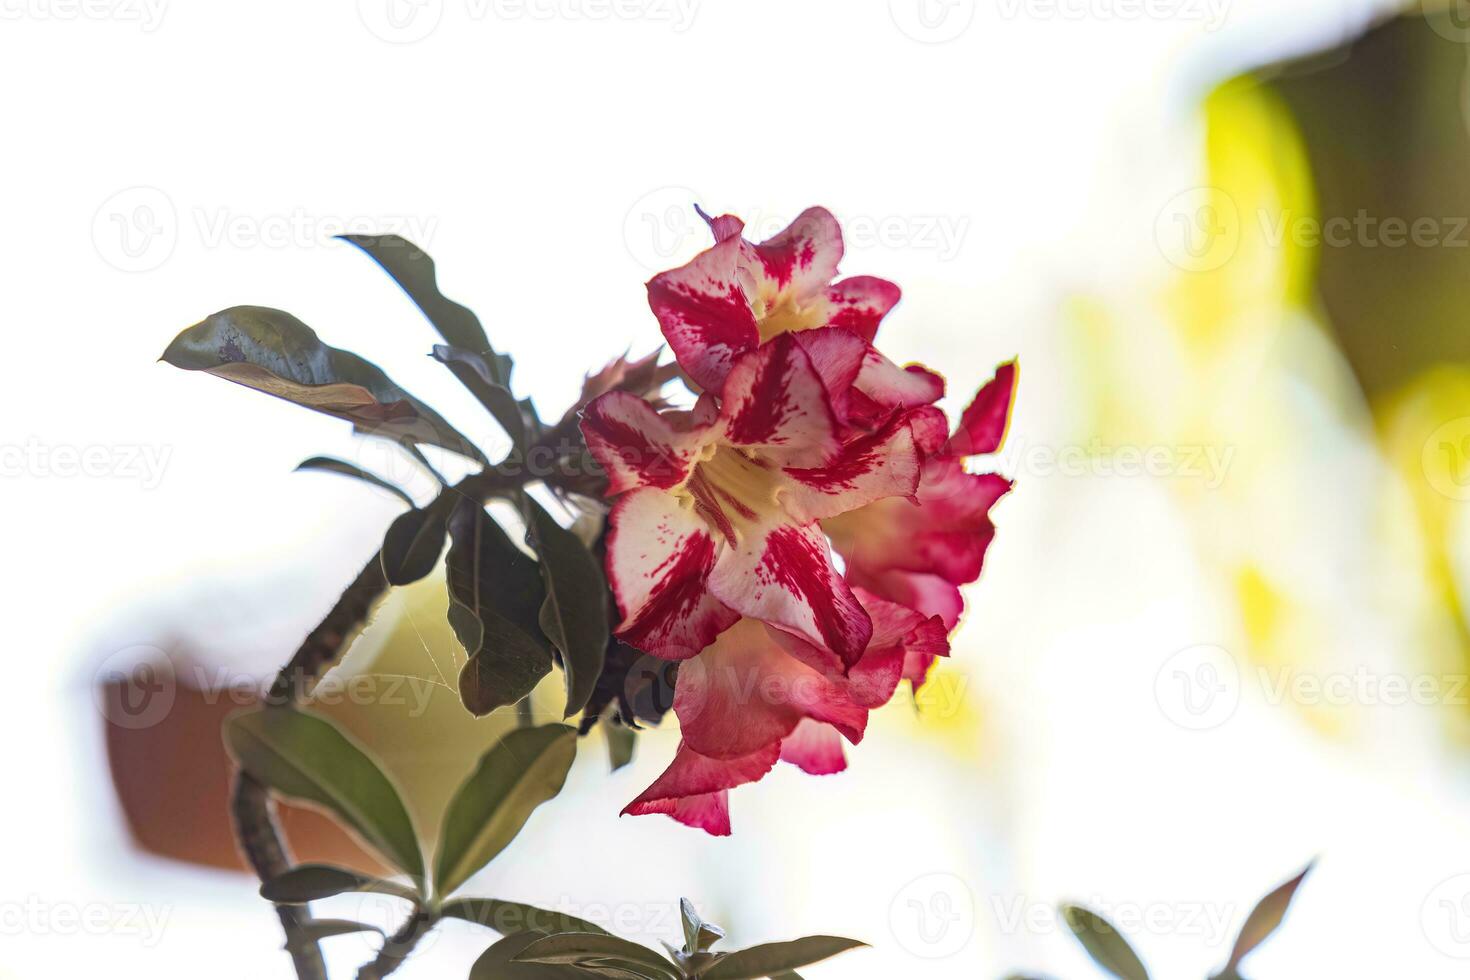 planta rosa do deserto foto